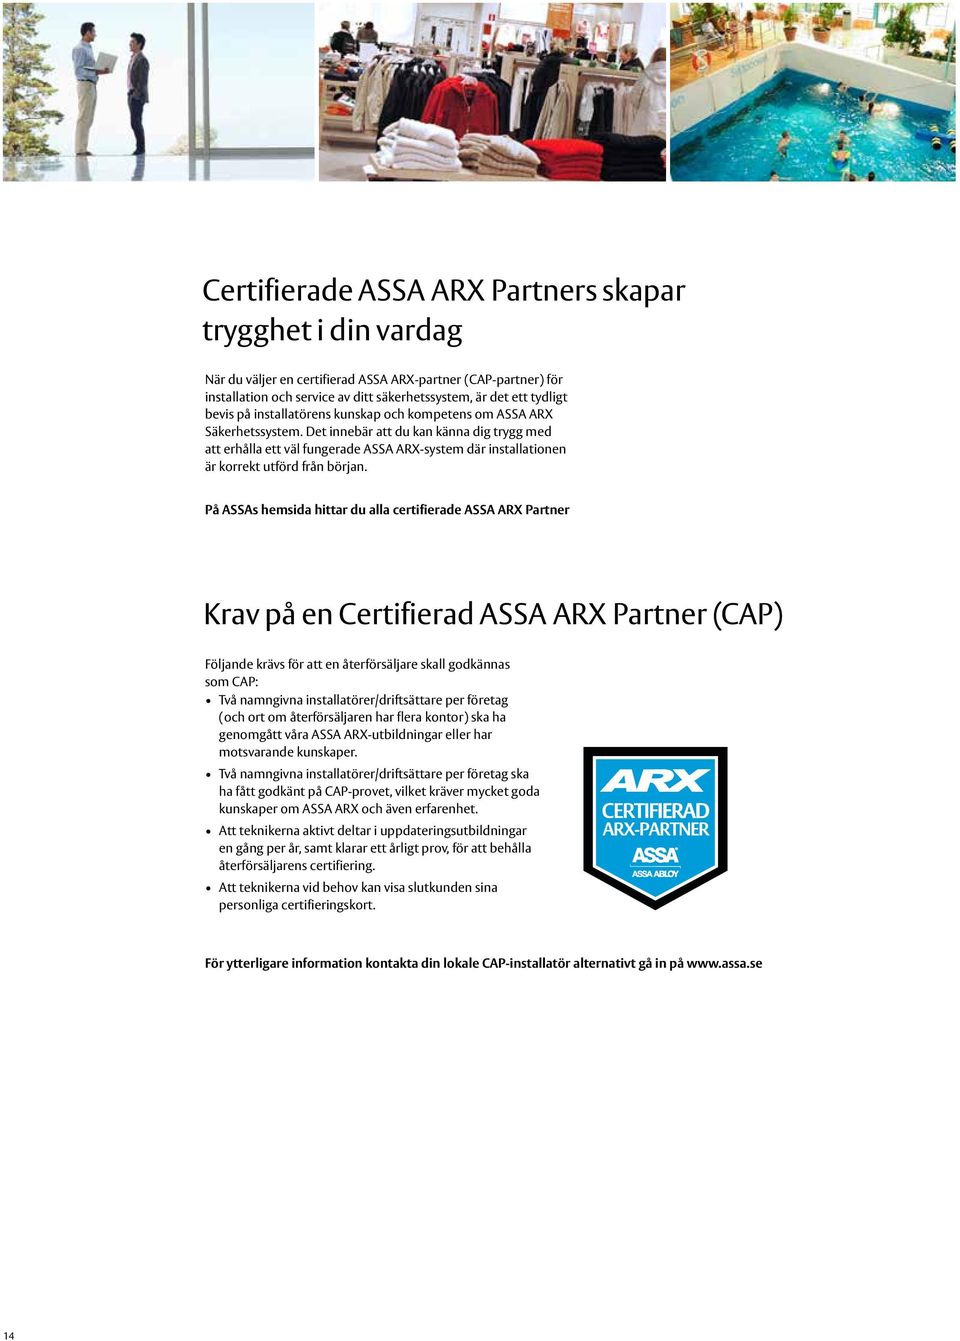 Det innebär att du kan känna dig trygg med att erhålla ett väl fungerade ASSA ARX-system där installationen är korrekt utförd från början.